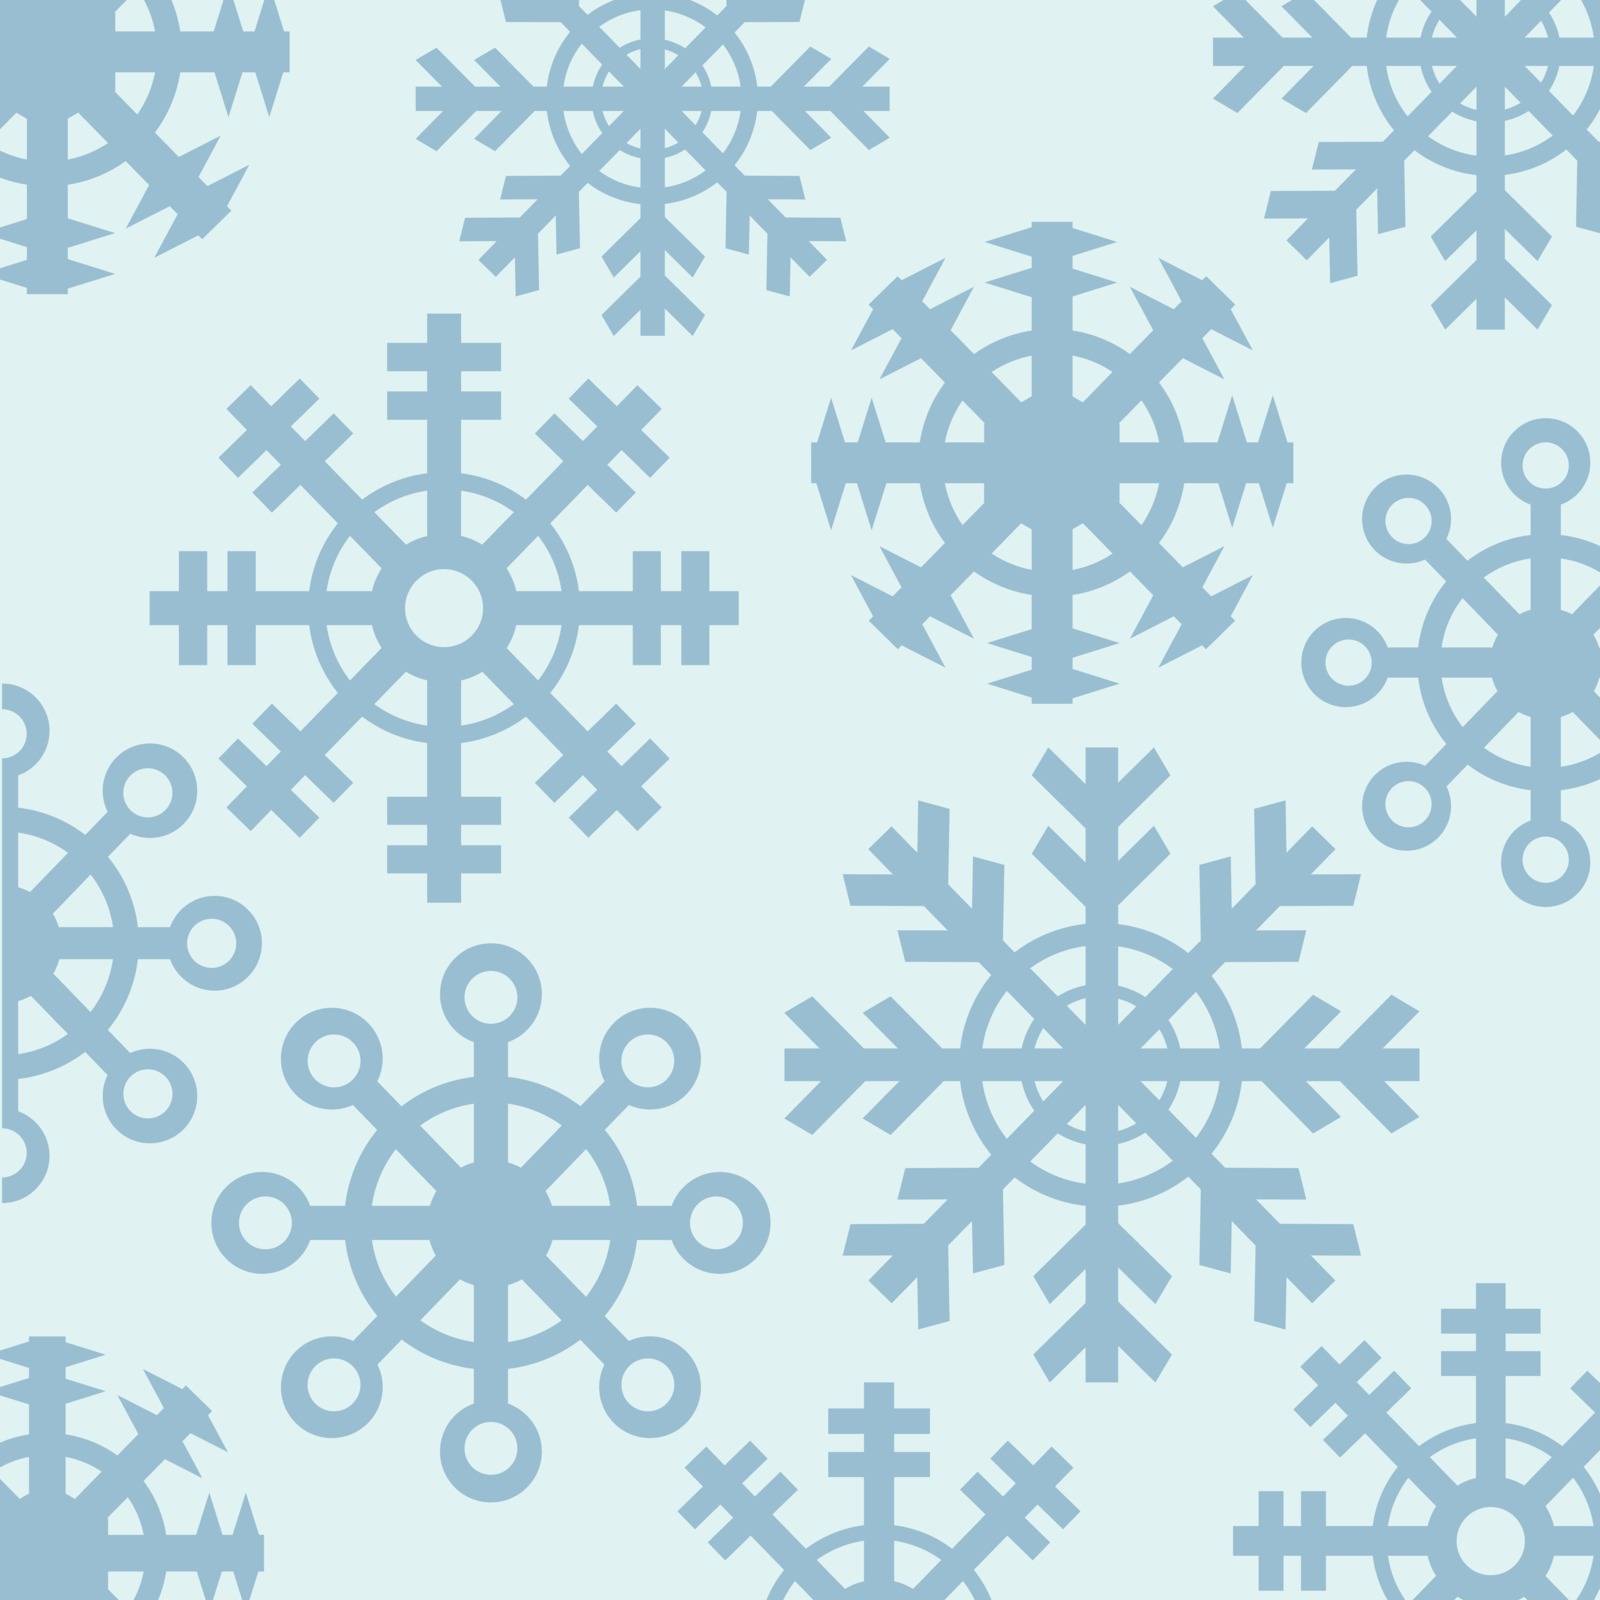 Snowflakes by Oleksii